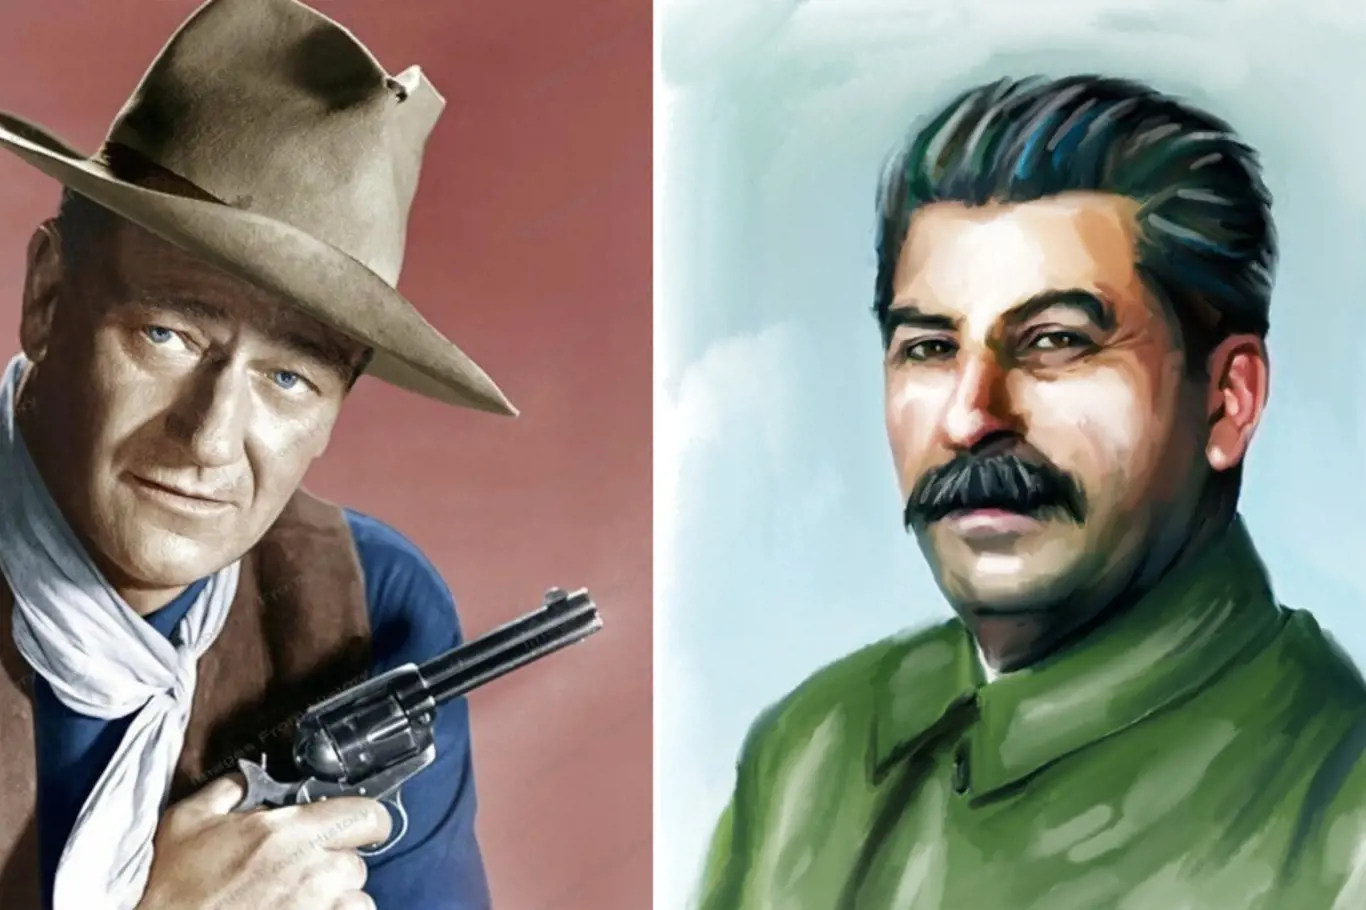 John Wayne / Josif Stalin